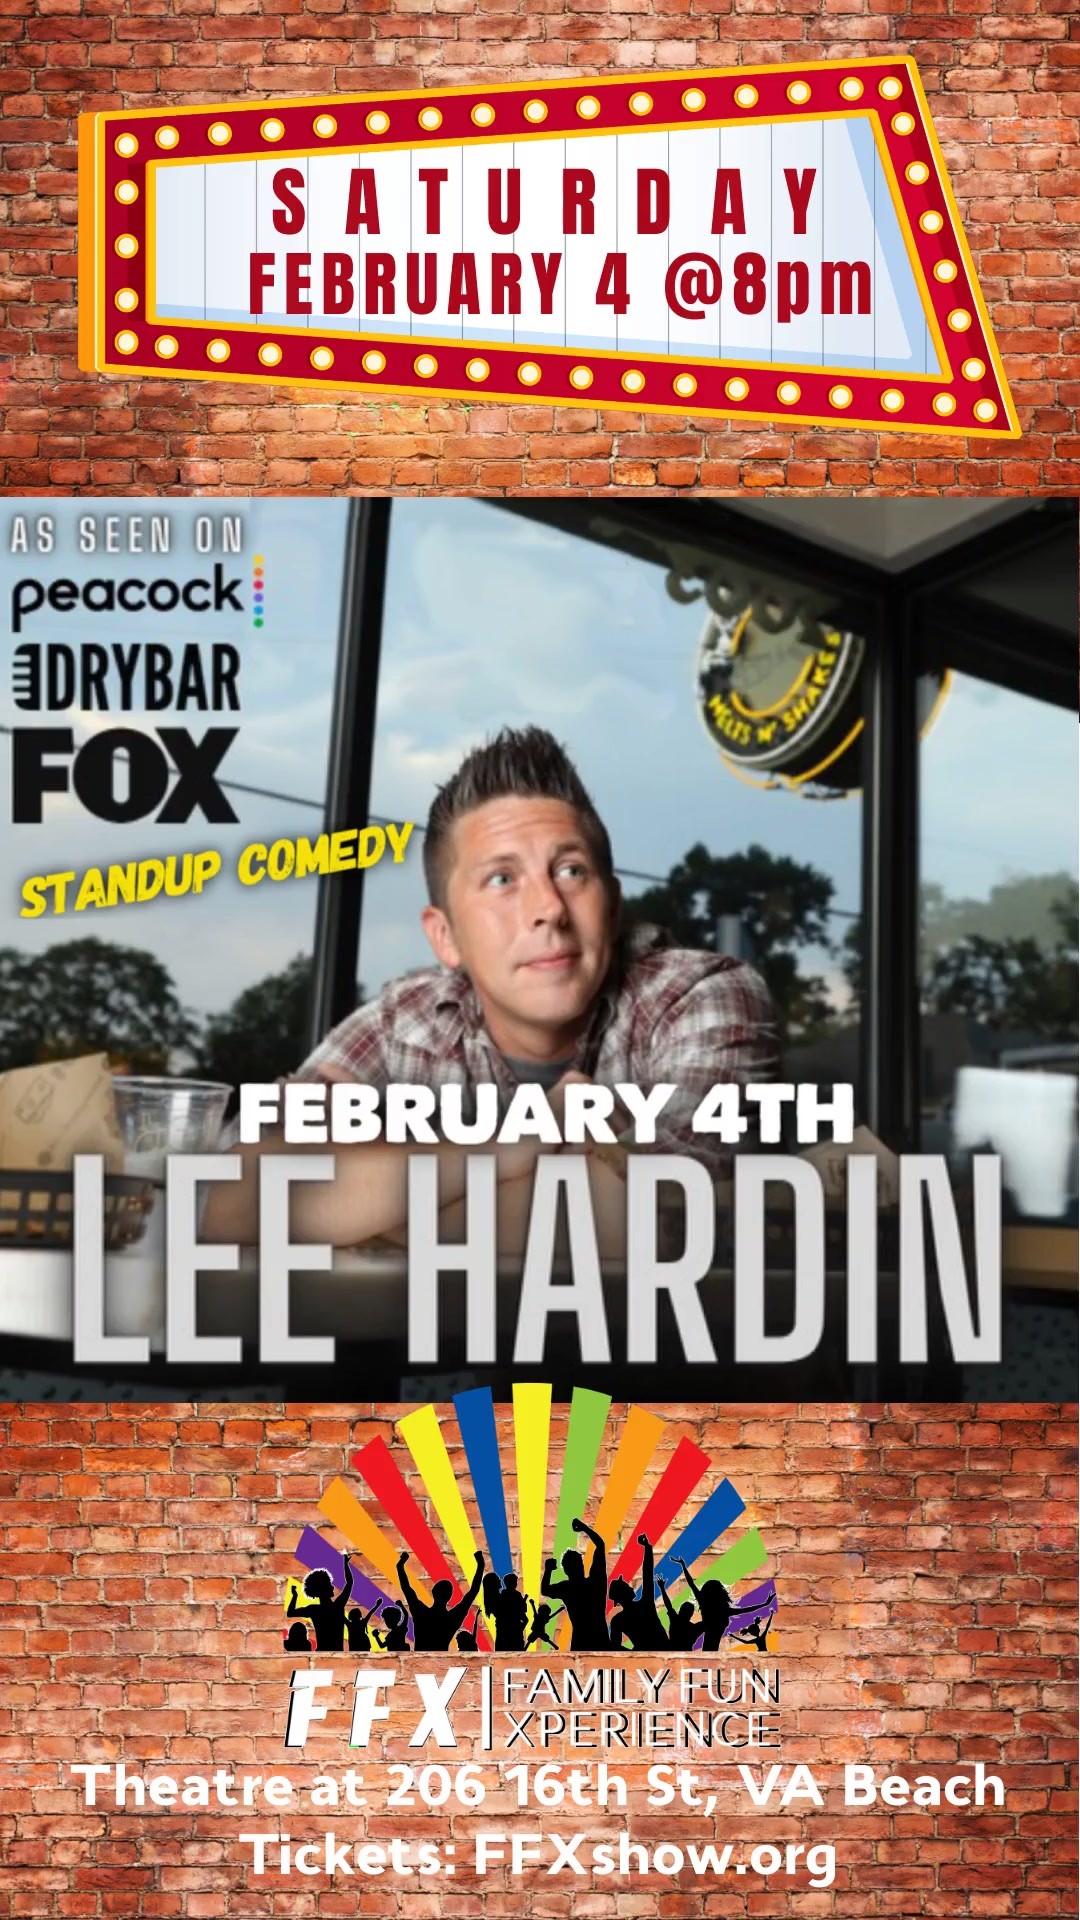 Lee Hardin - LIVE! Standup Clean Comedy on feb. 04, 20:00@FFX Theatre - Elegir asientoCompra entradas y obtén información enFamily Fun Xperience tickets.ffxshow.org